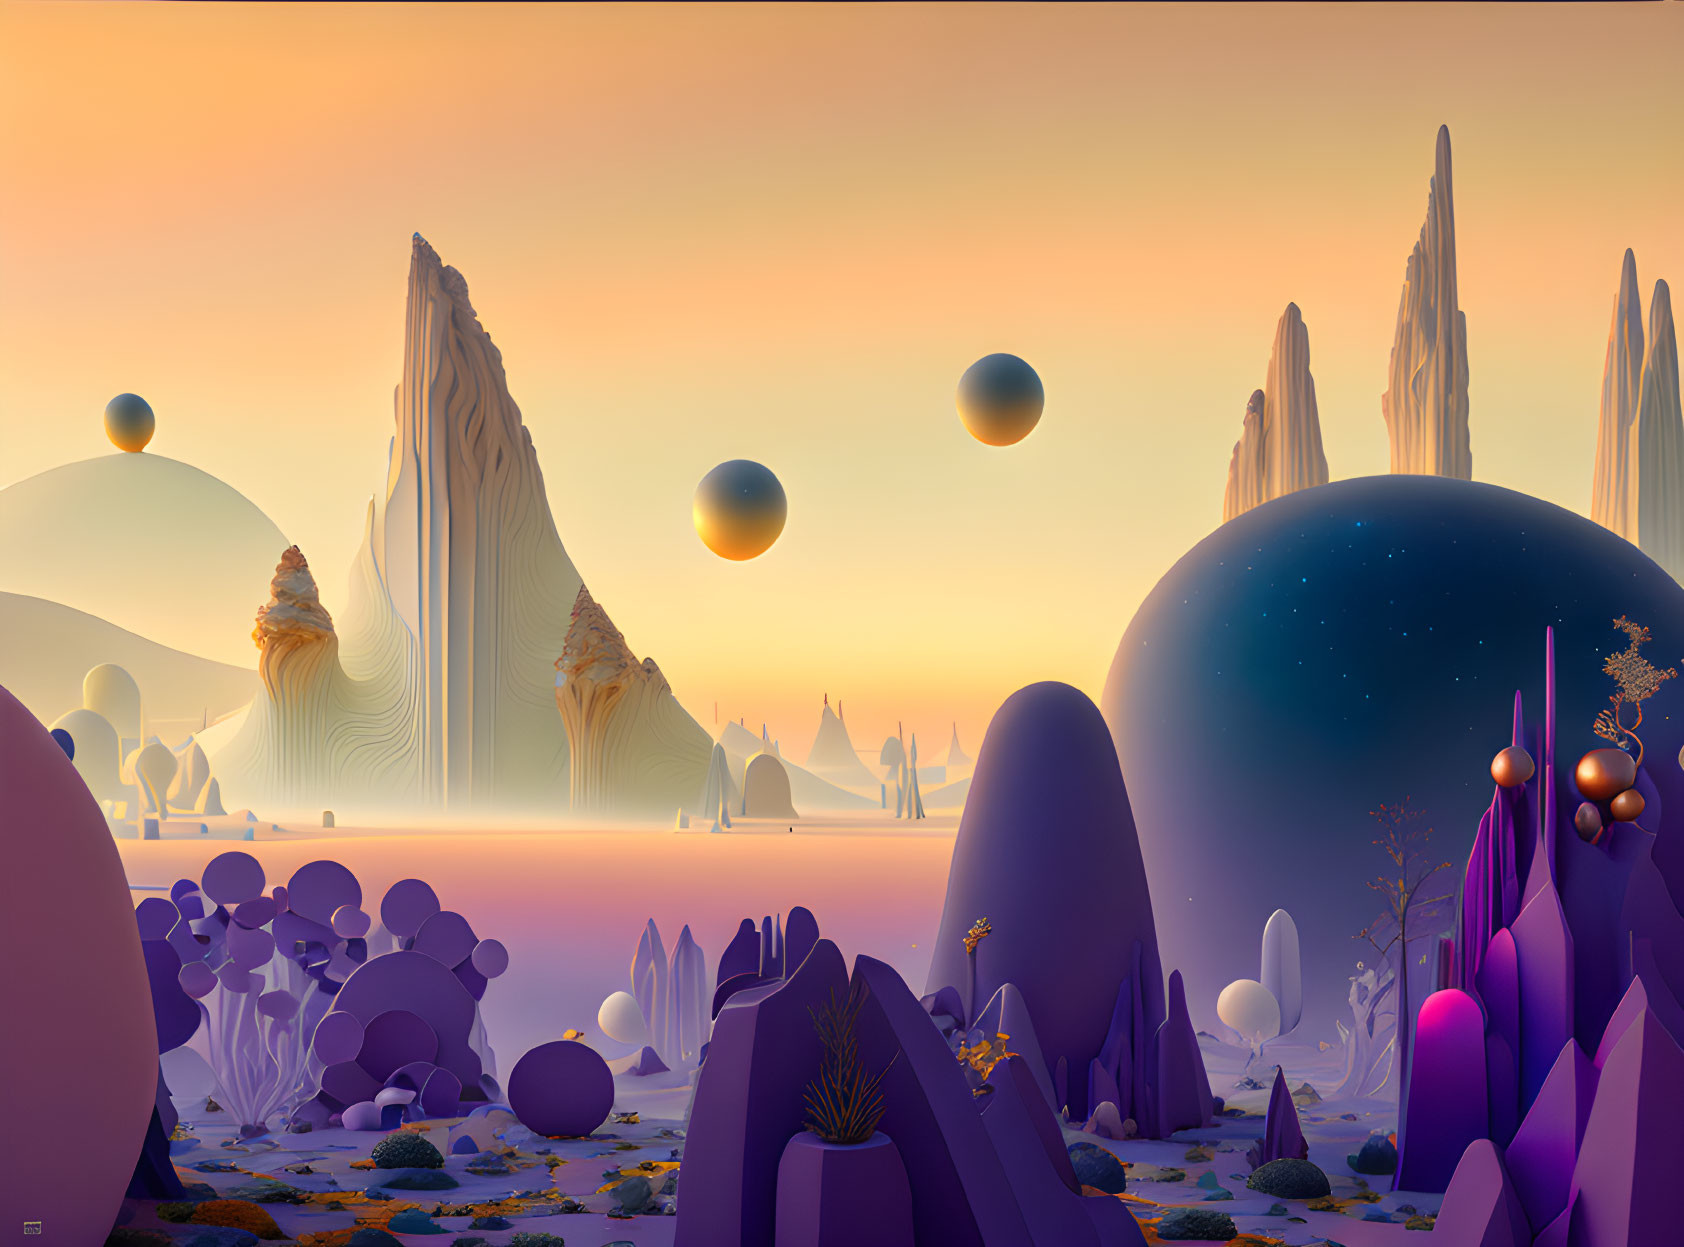 Surreal landscape with floating spheres and alien vegetation under pastel sky